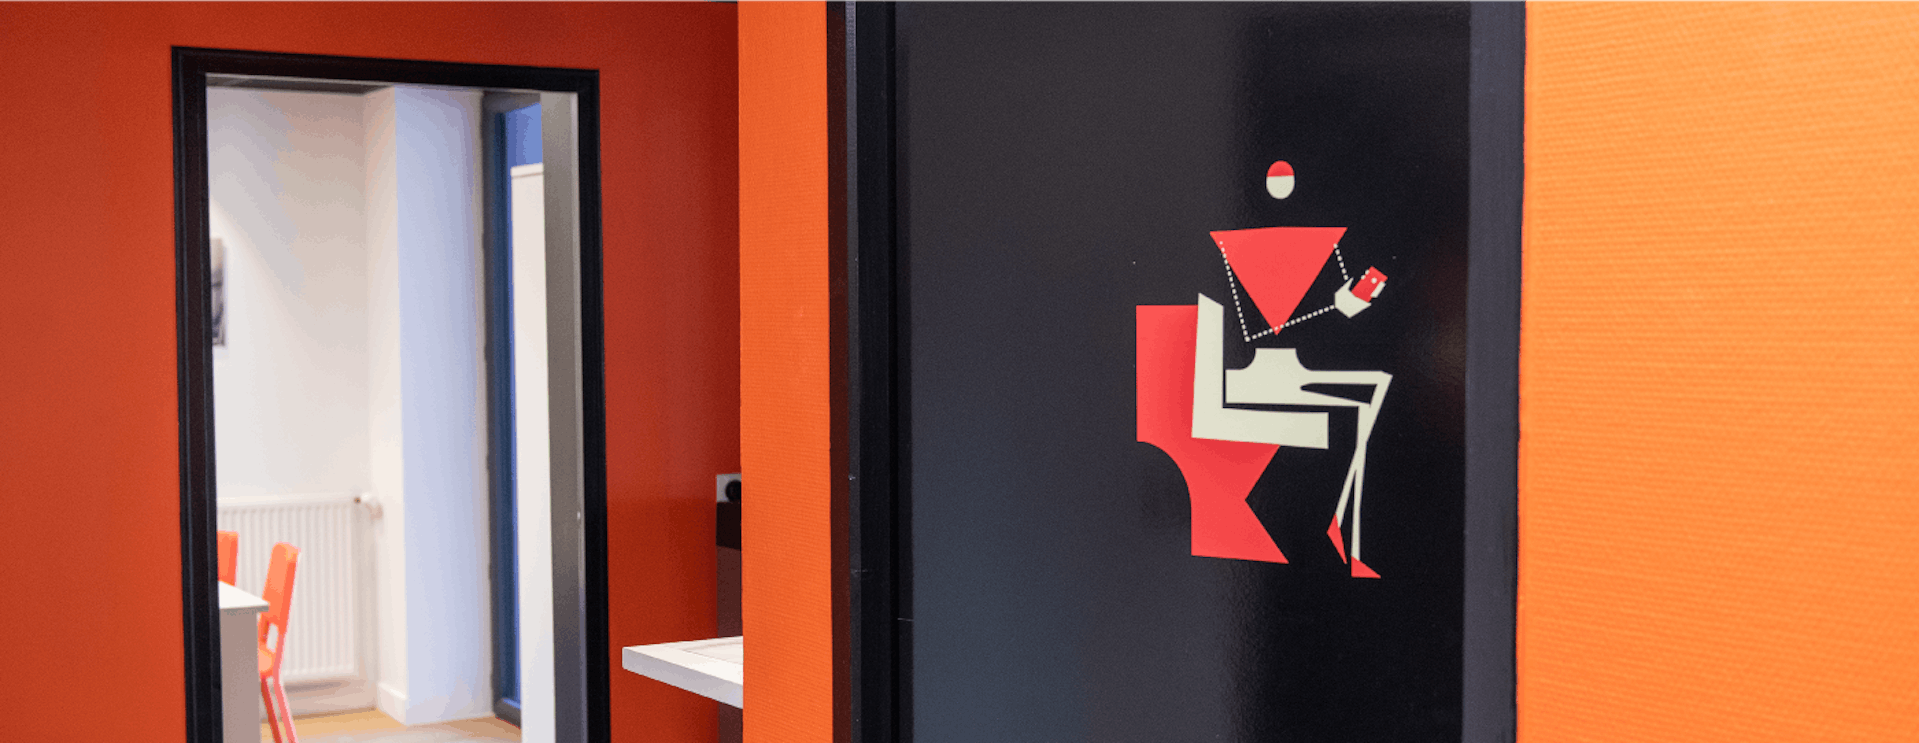 Signalétique et langage visuel sur des portes de toilettes au sein d'Artirenov.